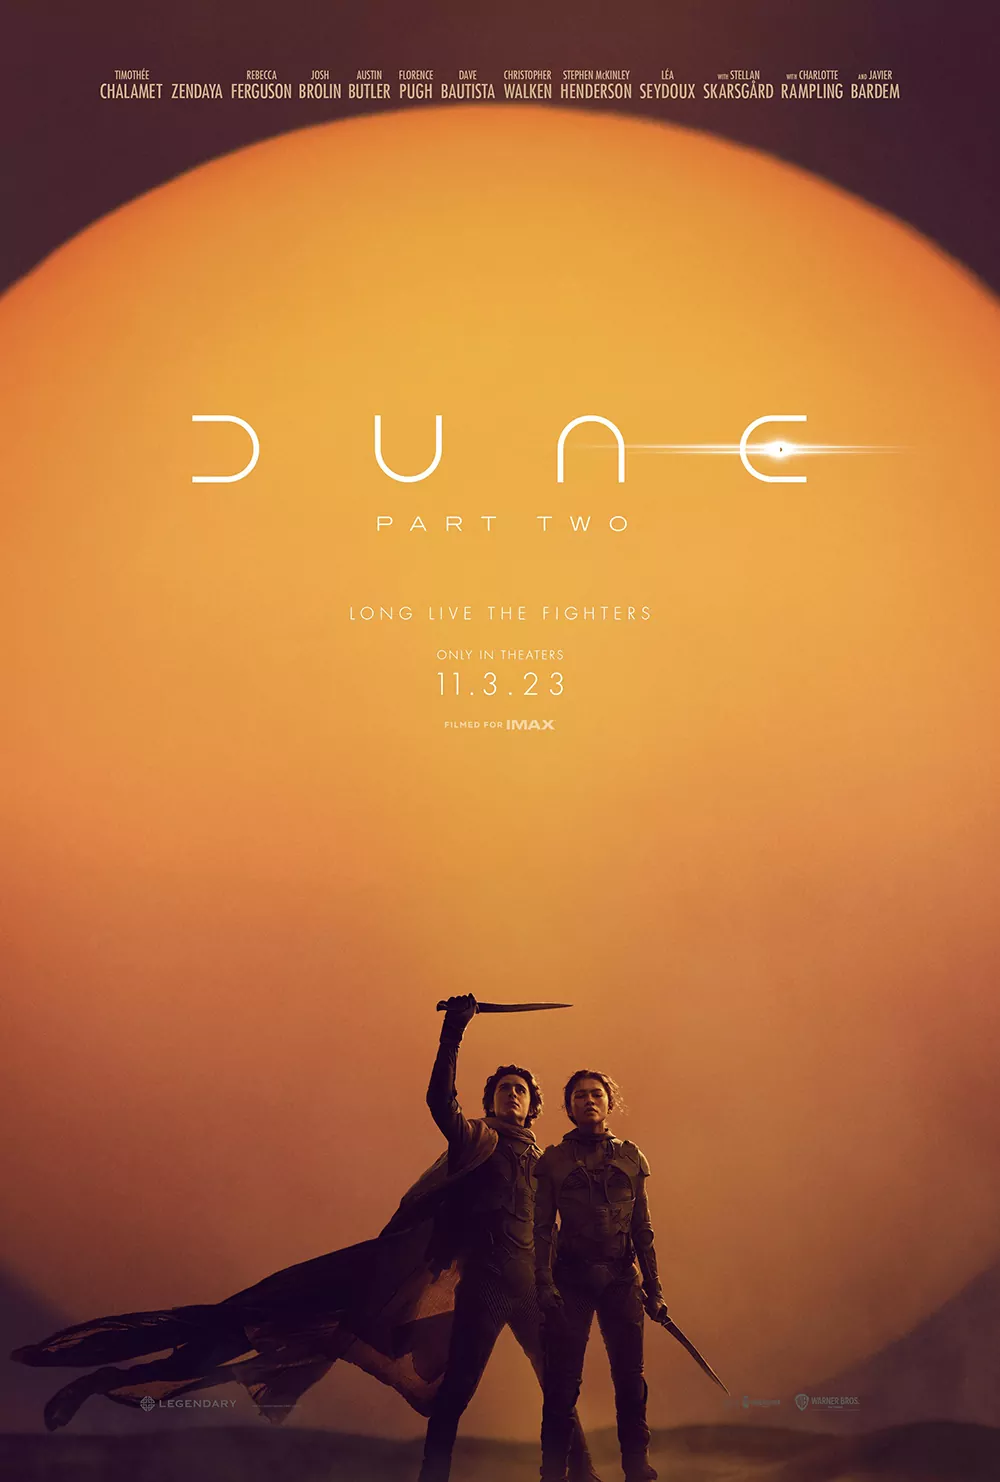 Πρώτο Trailer Από Το "Dune Part Two"